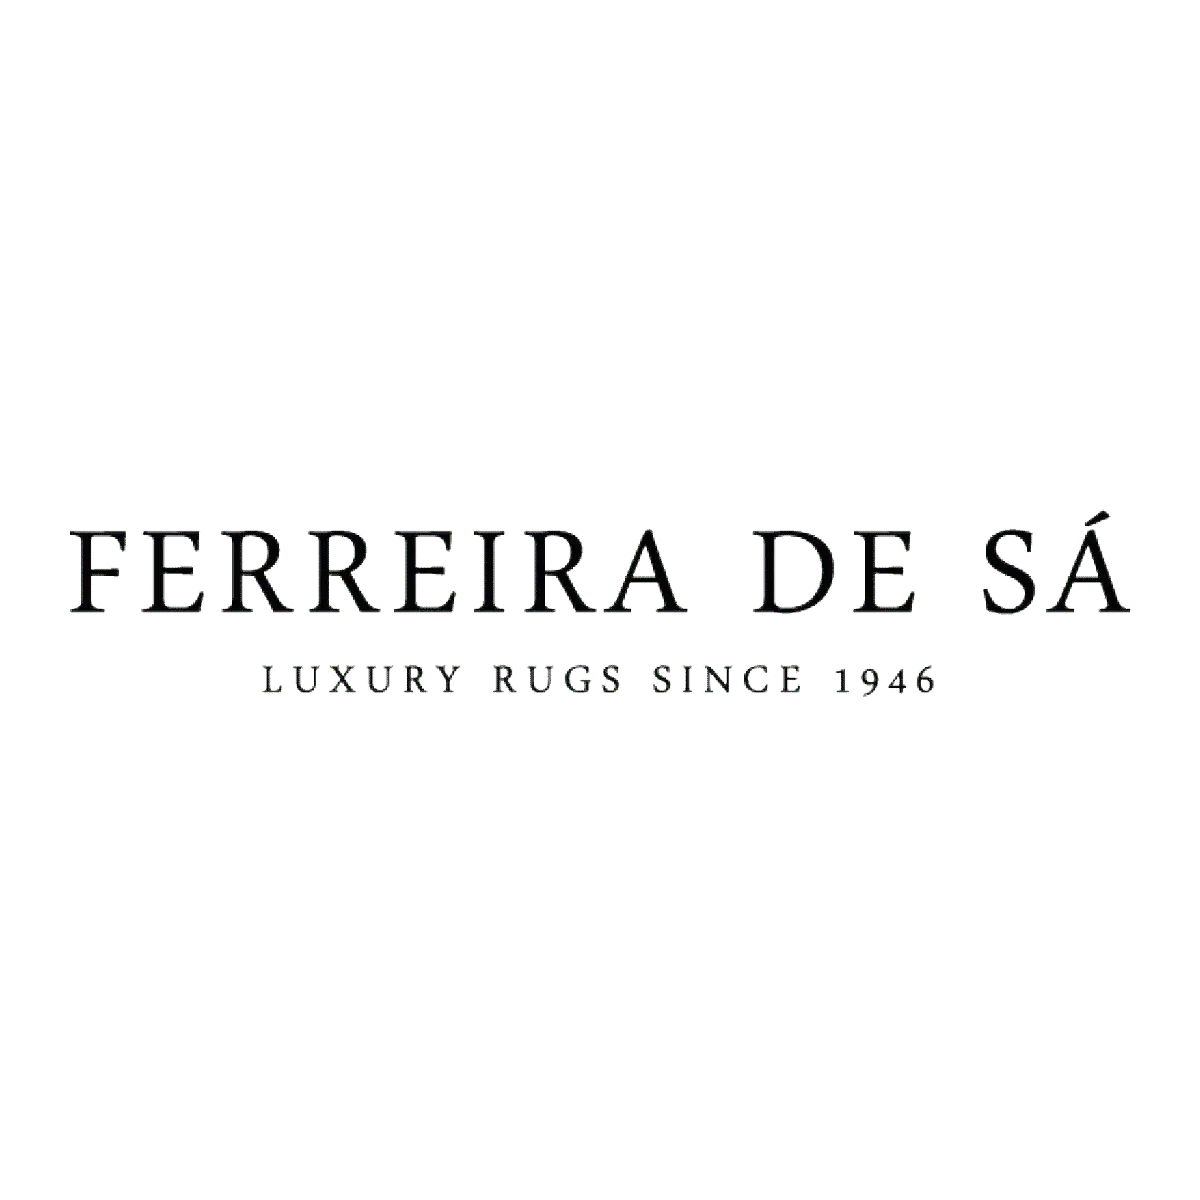 Logo Ferreira de Sá - transparent - jetzt im Webshop von STAND OUT DESIGN bestellen